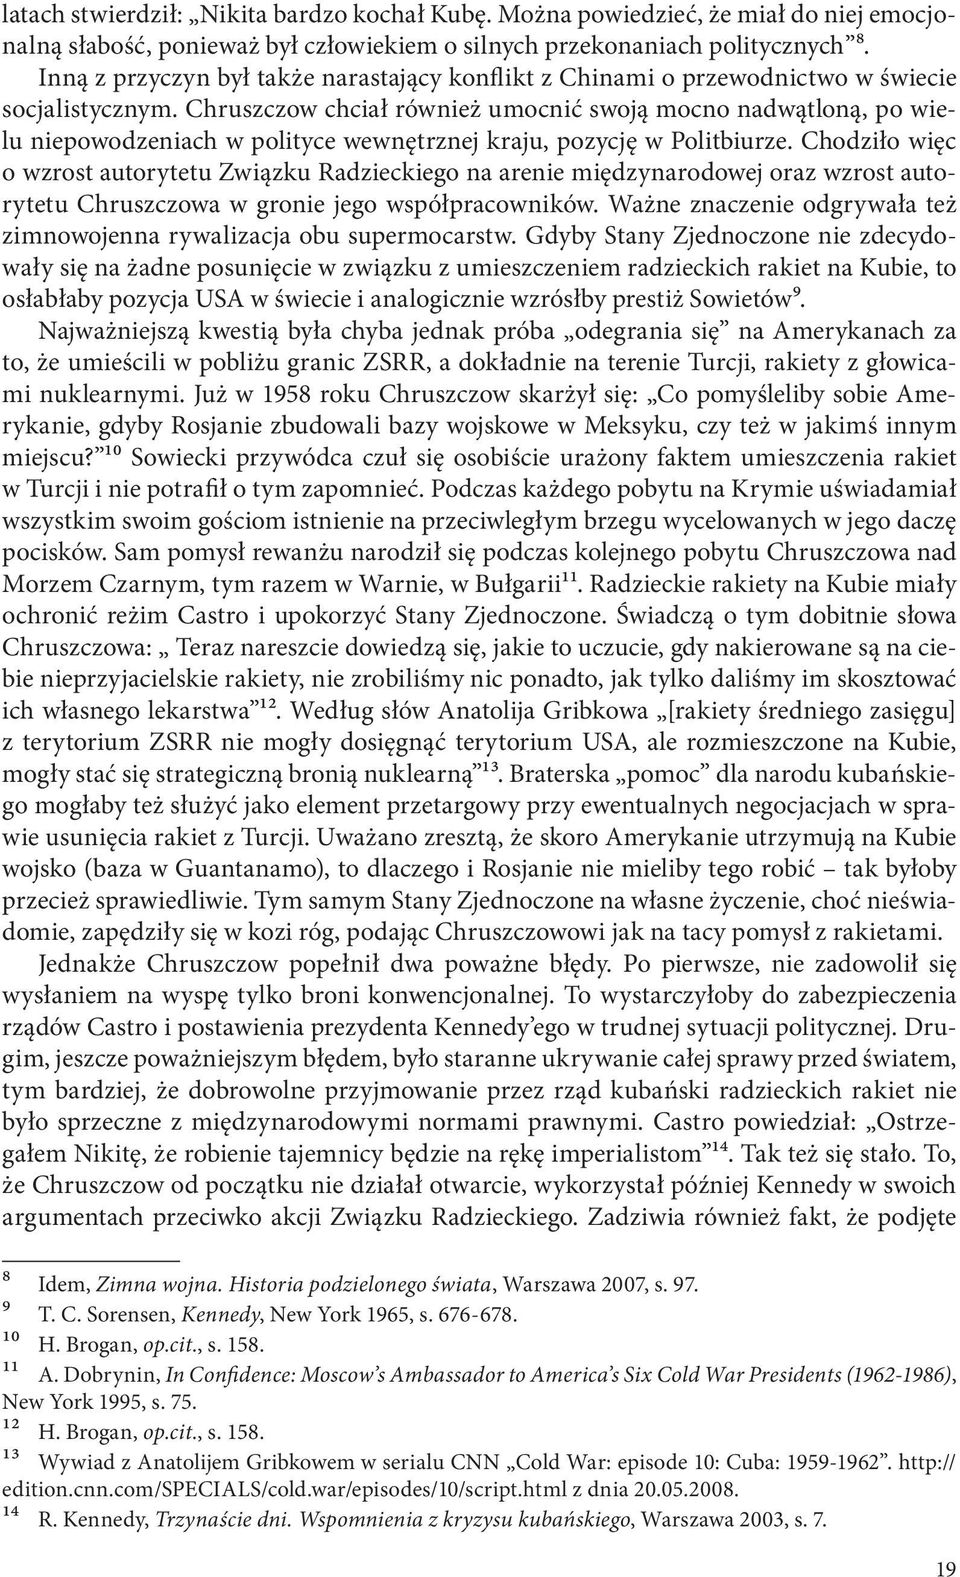 Chruszczow chciał również umocnić swoją mocno nadwątloną, po wielu niepowodzeniach w polityce wewnętrznej kraju, pozycję w Politbiurze.